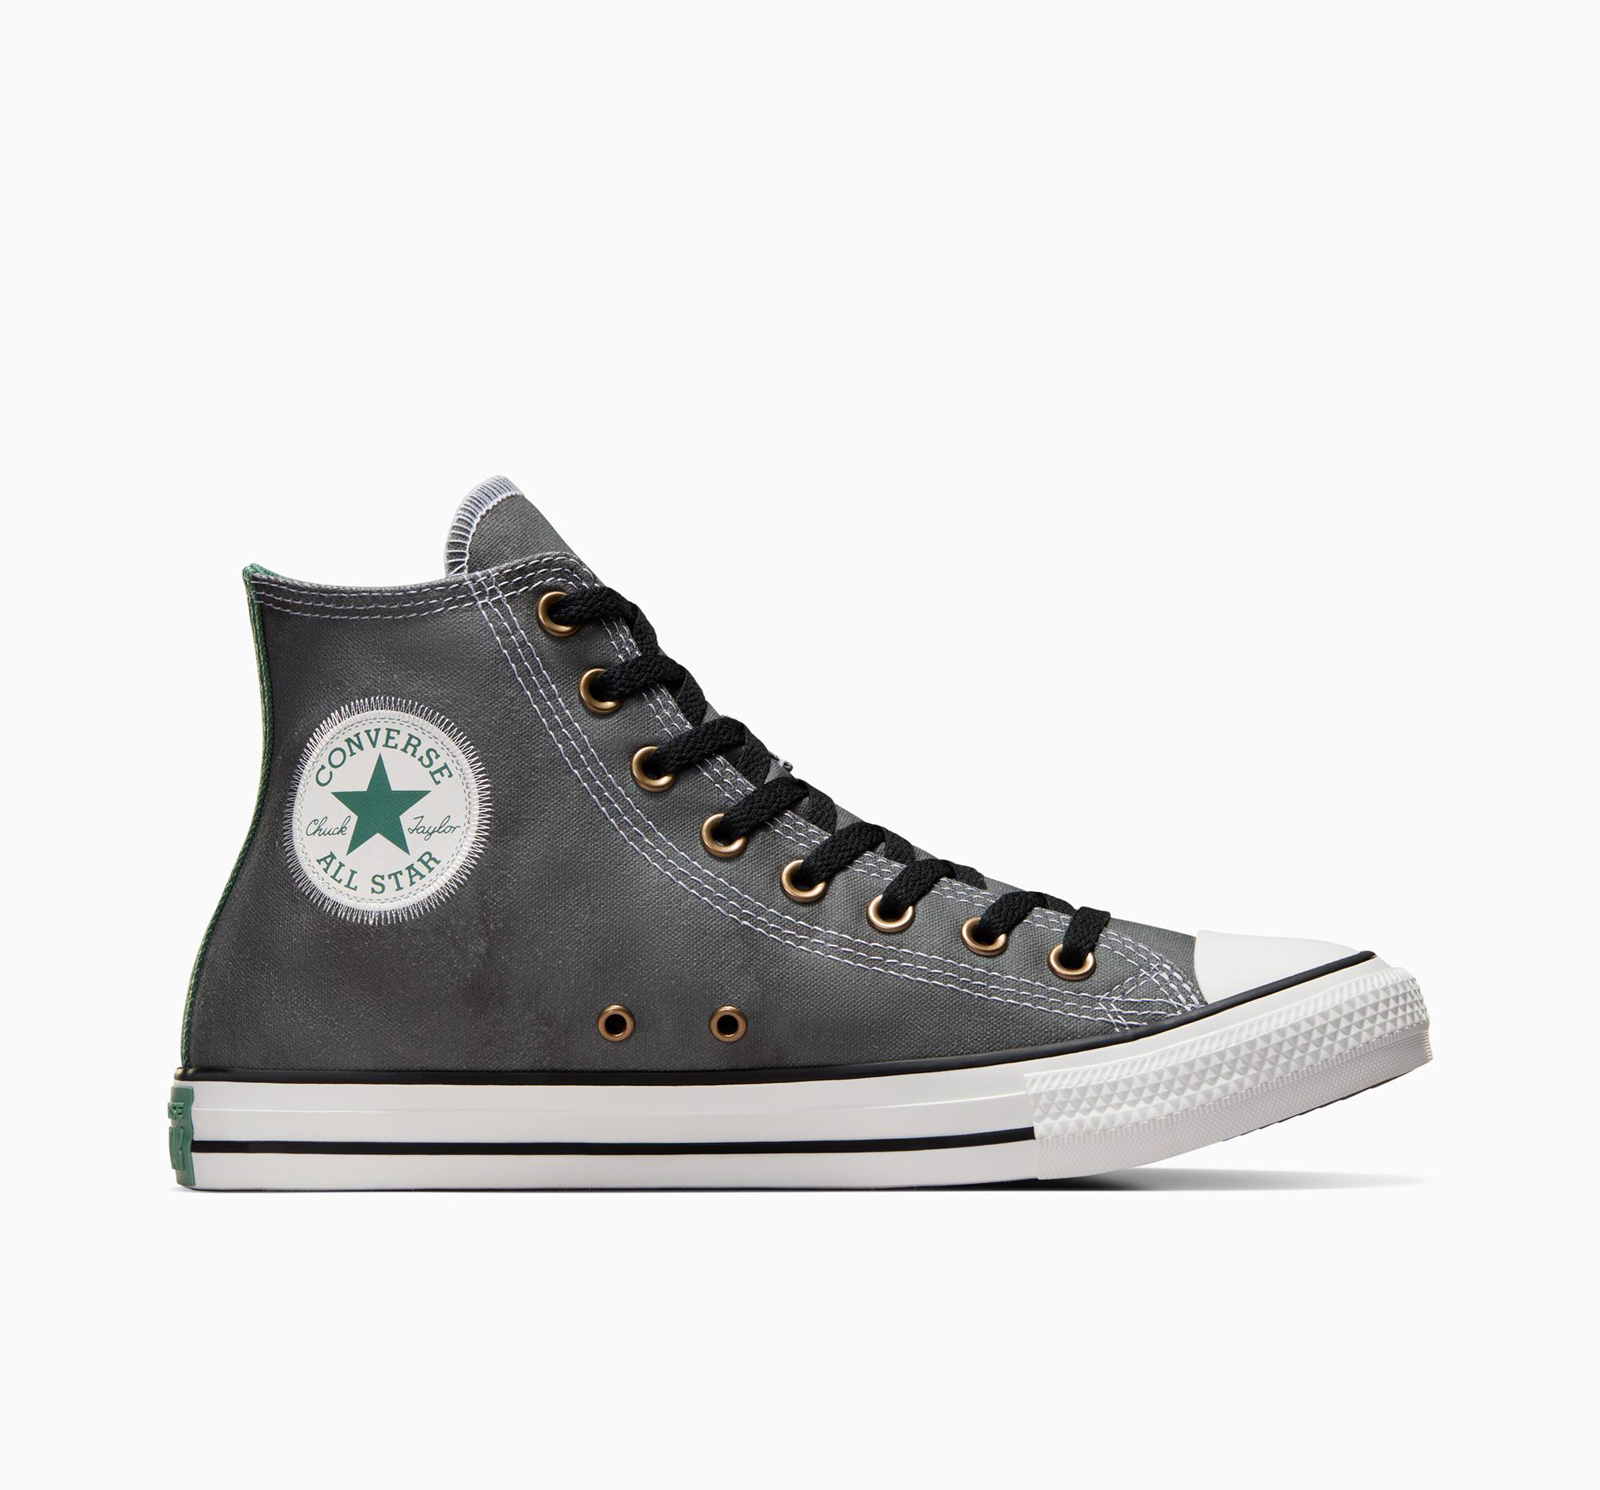 Ανδρικά > Παπούτσια > Sneaker > Παπούτσι Mid Cut Converse - CHUCK TAYLOR ALL STAR TIE DYE - 001-BLACK/ADMIRAL ELM